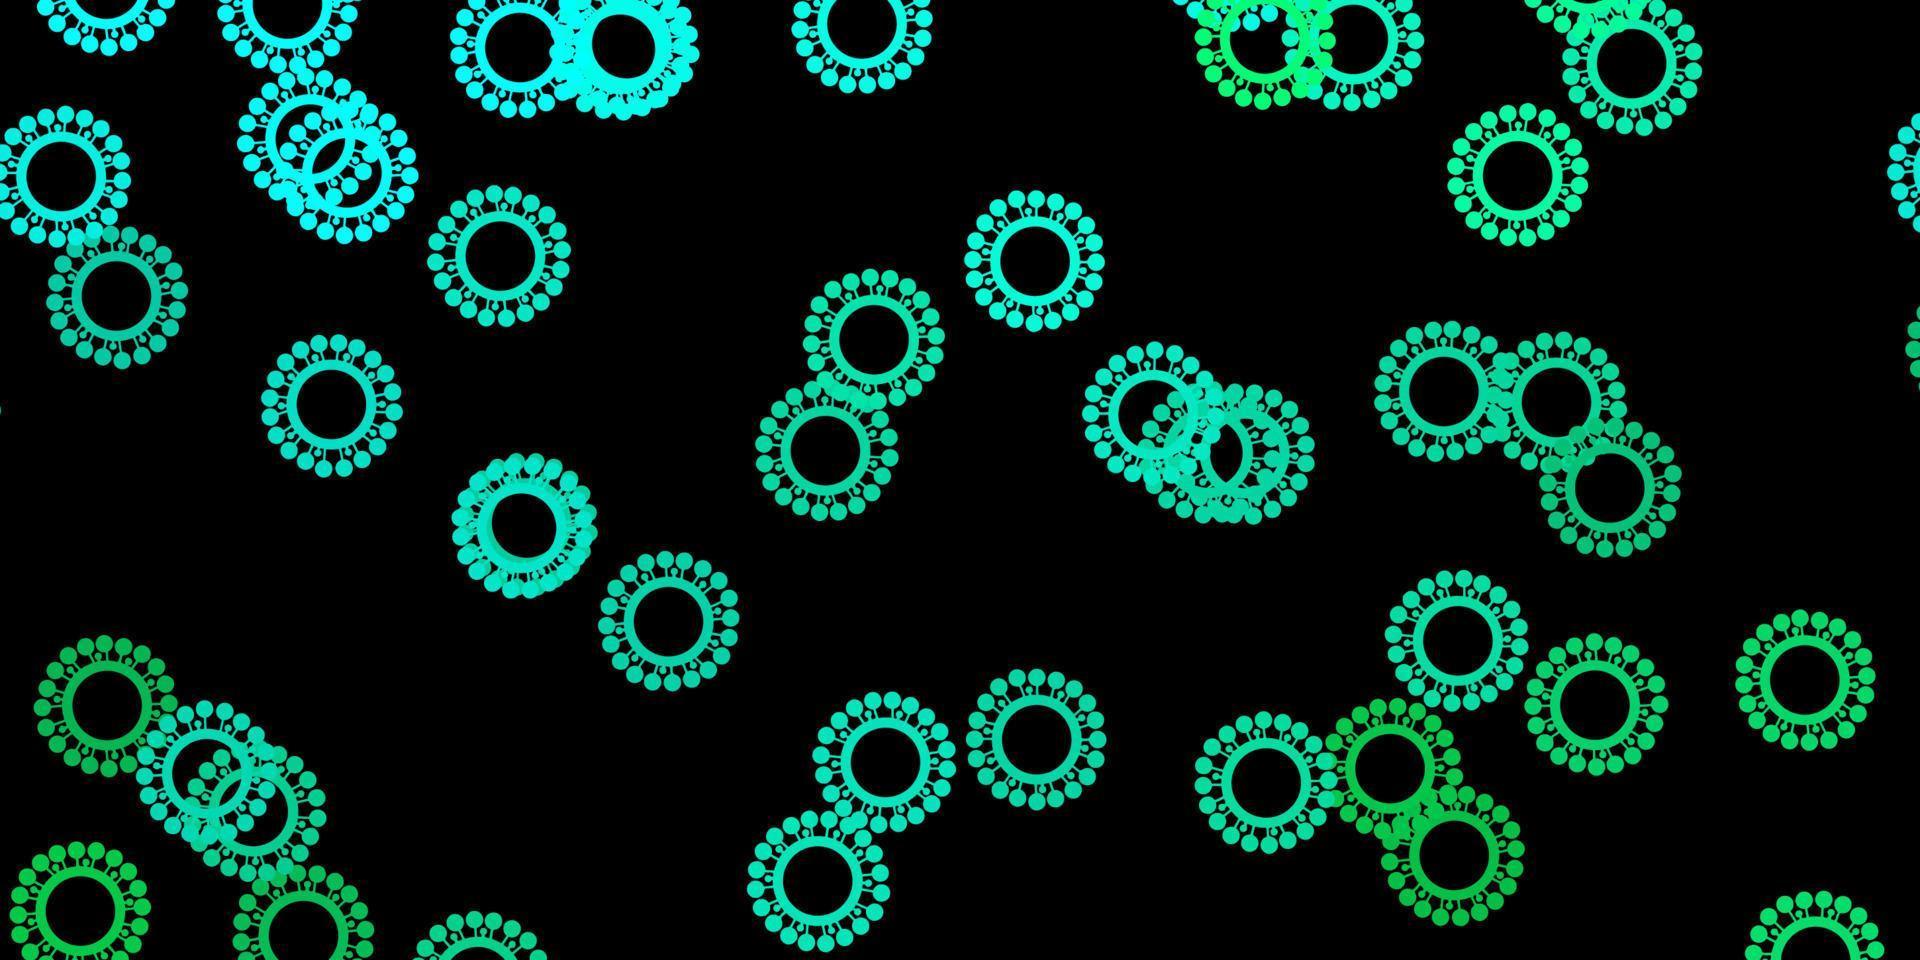 mörkgrön vektorbakgrund med covid-19 symboler. vektor